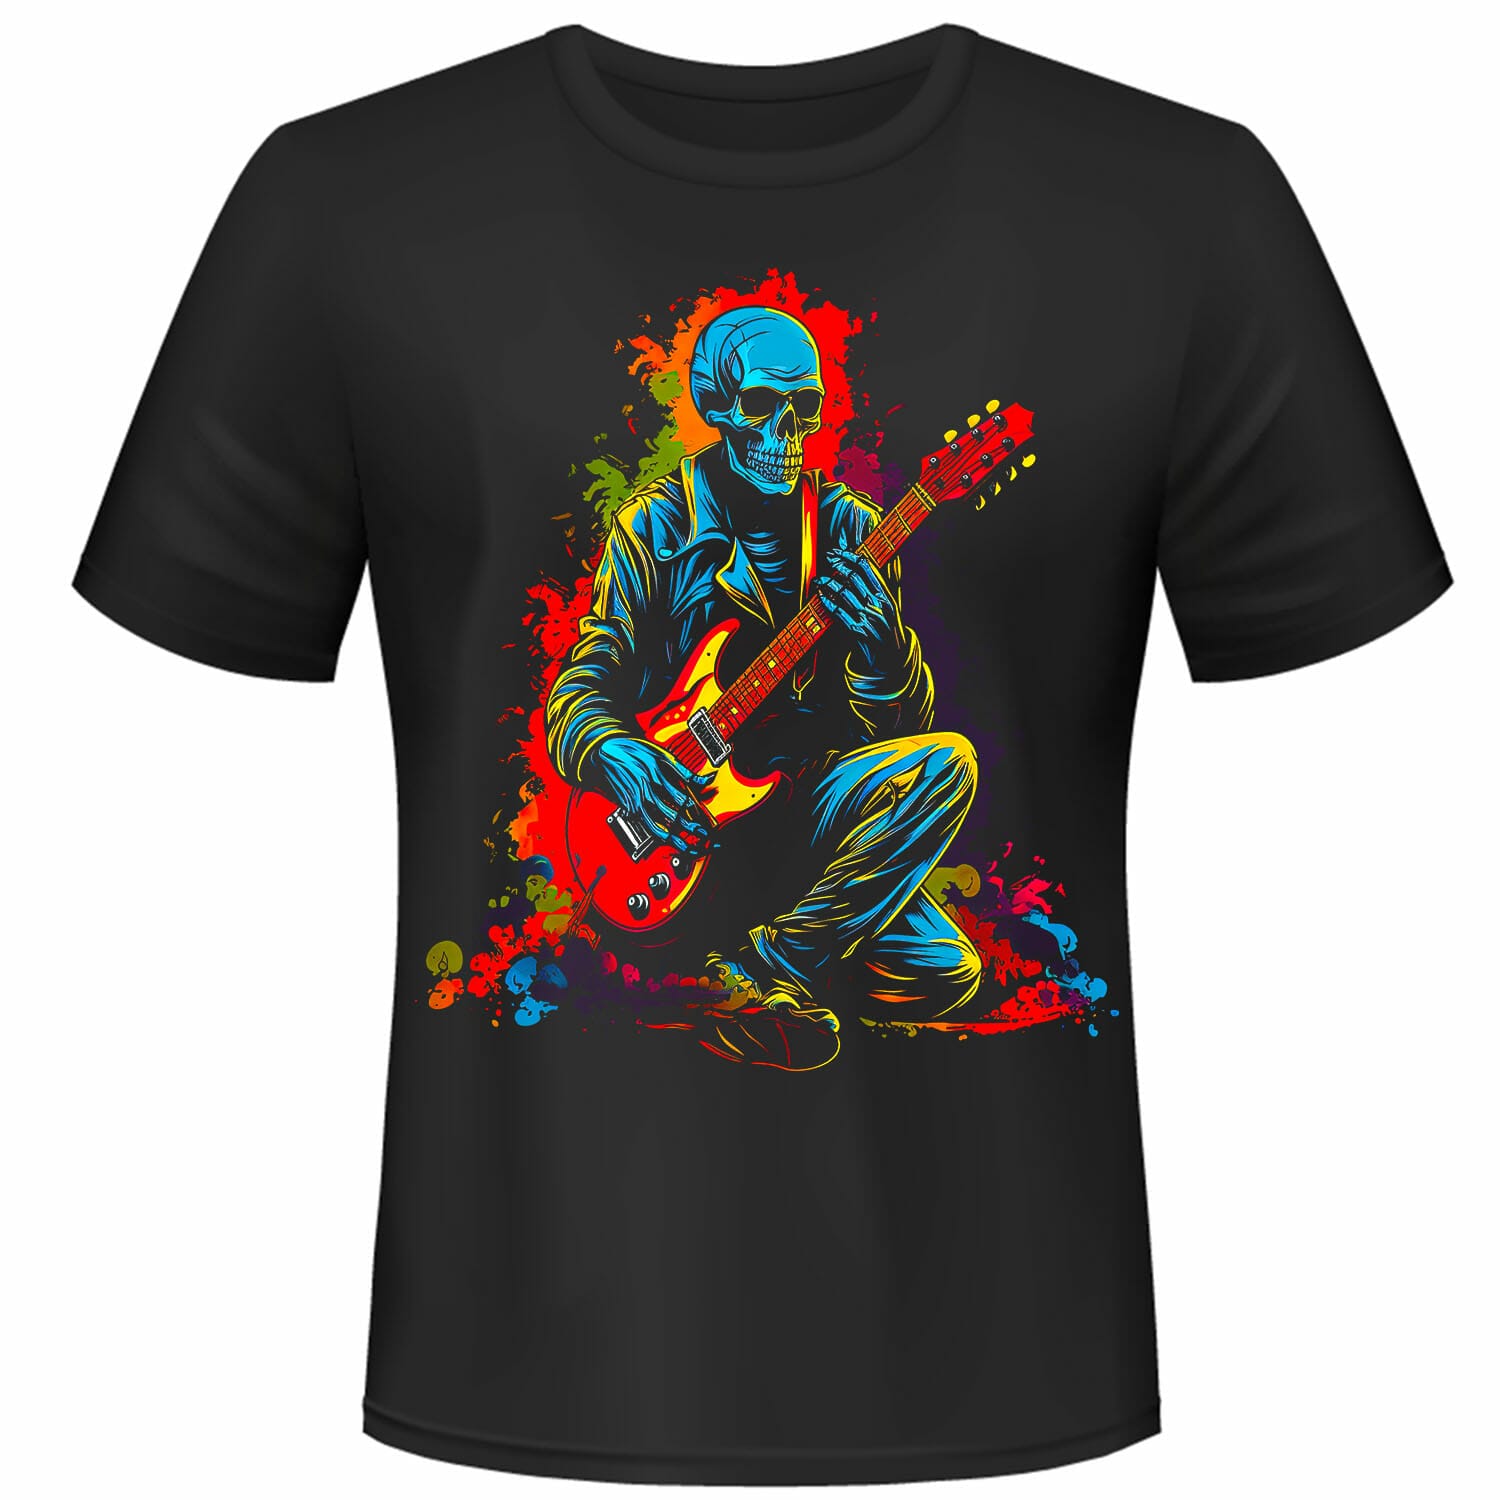 Skeleton Playing A Guitar T-Shirt Design.